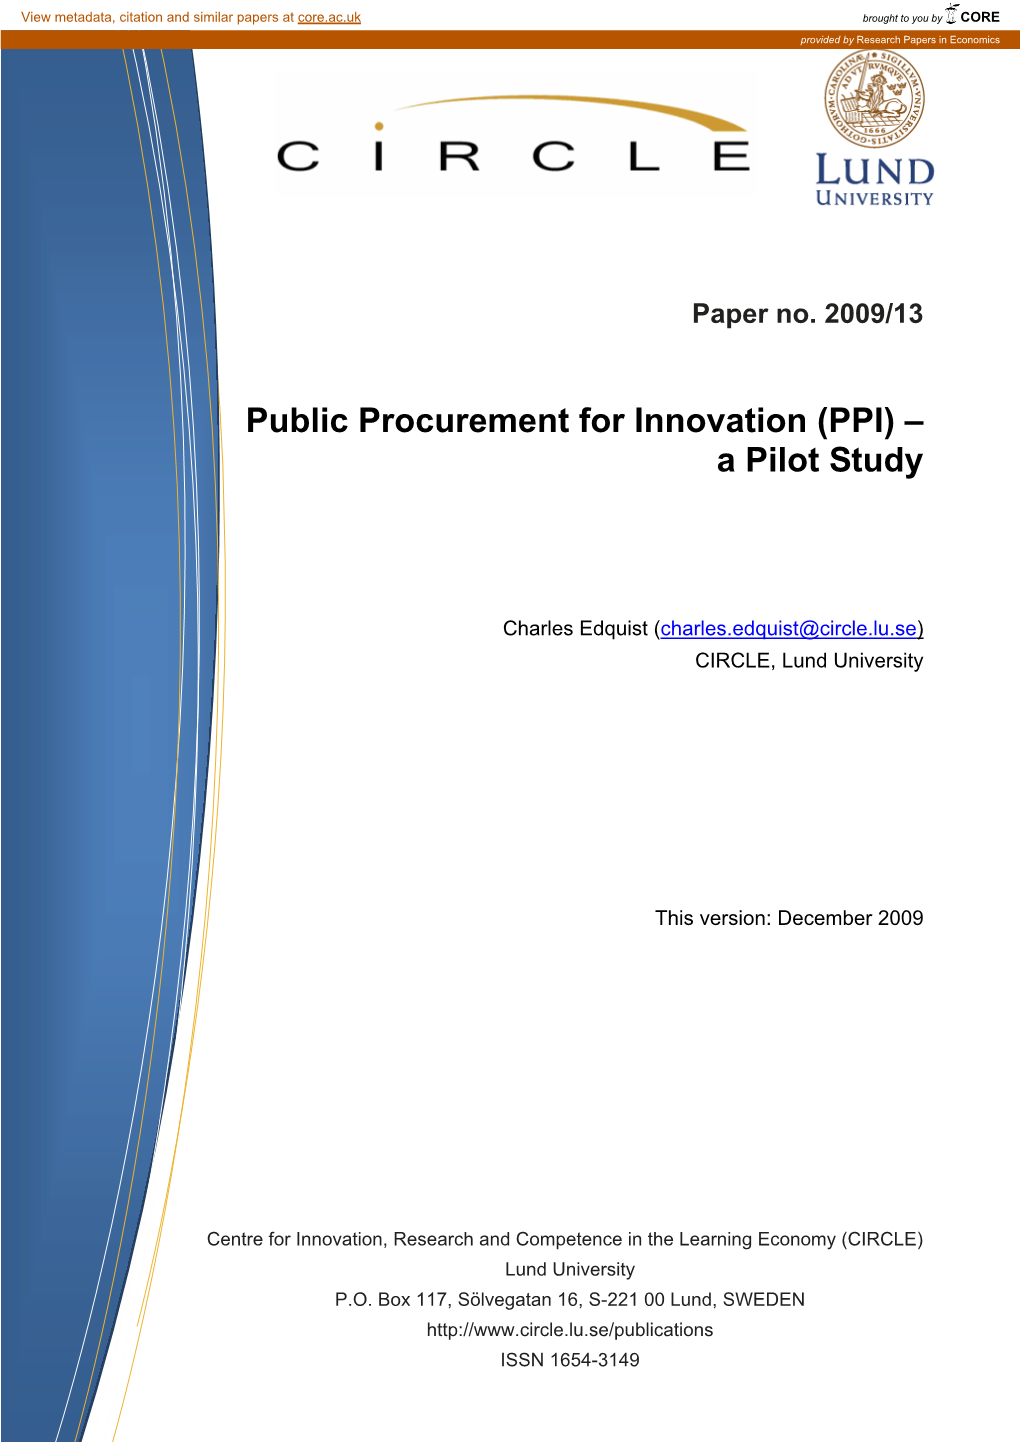 Public Procurement for Innovation (PPI) – a Pilot Study